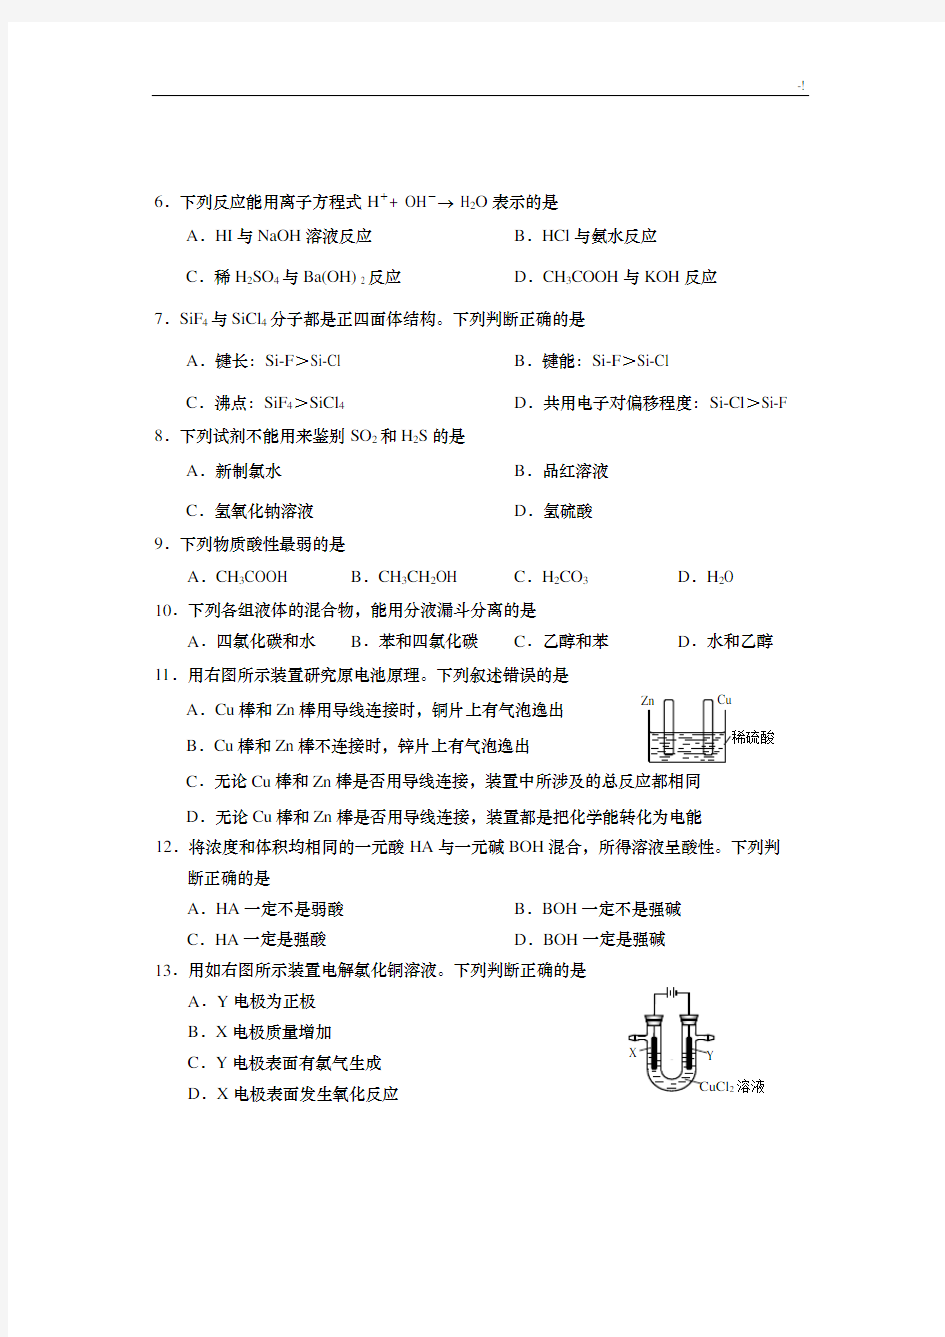 2017年度上海高考等级考化学试检查检验测试卷样卷